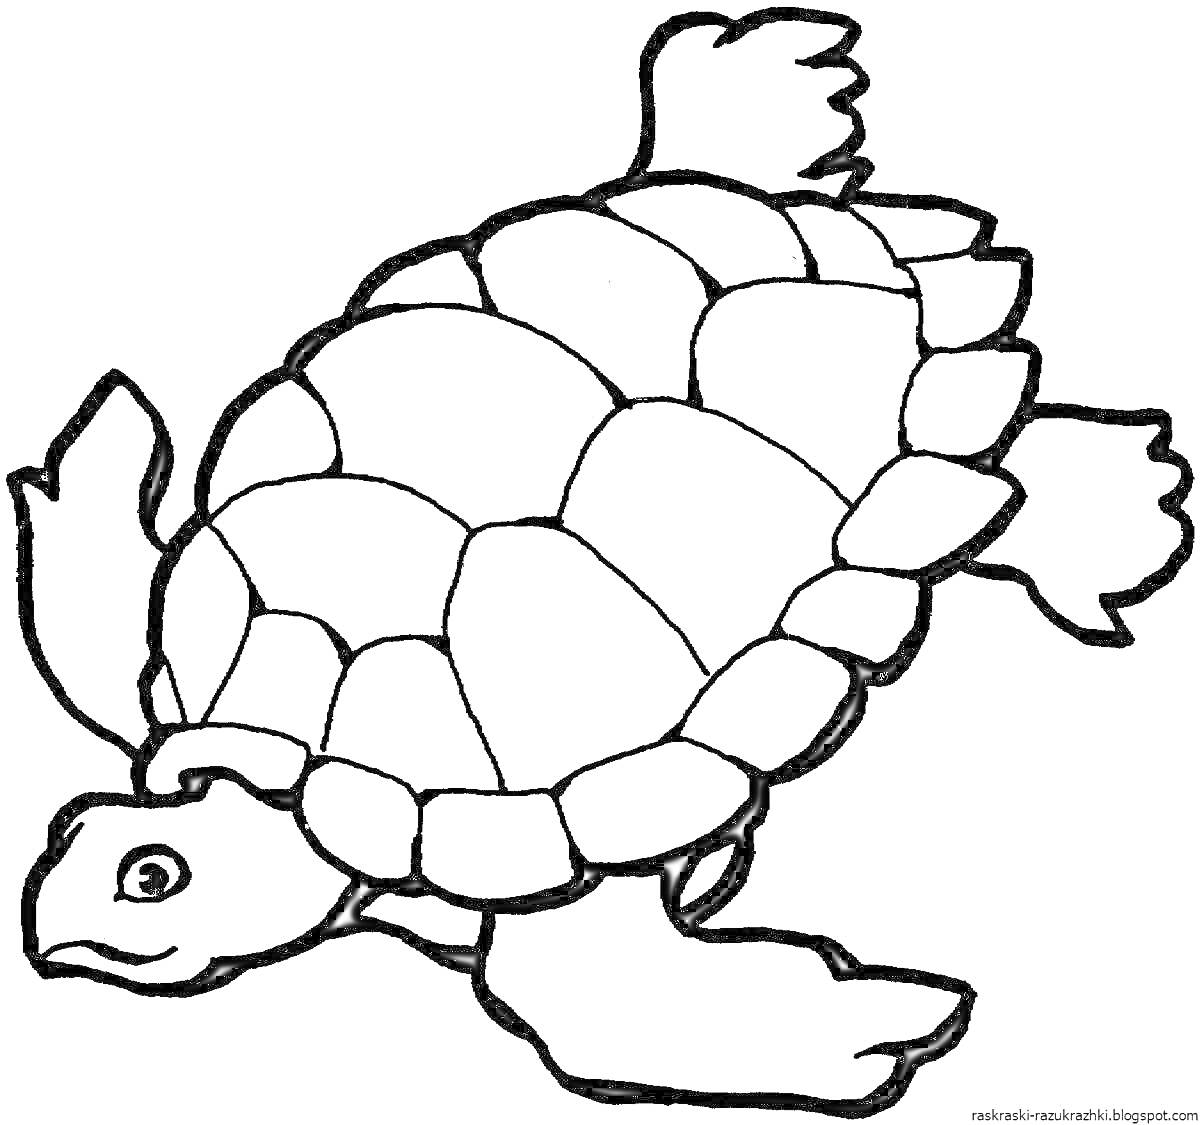 Раскраска Черепаха с панцирем и конечностями, плавающая в воде